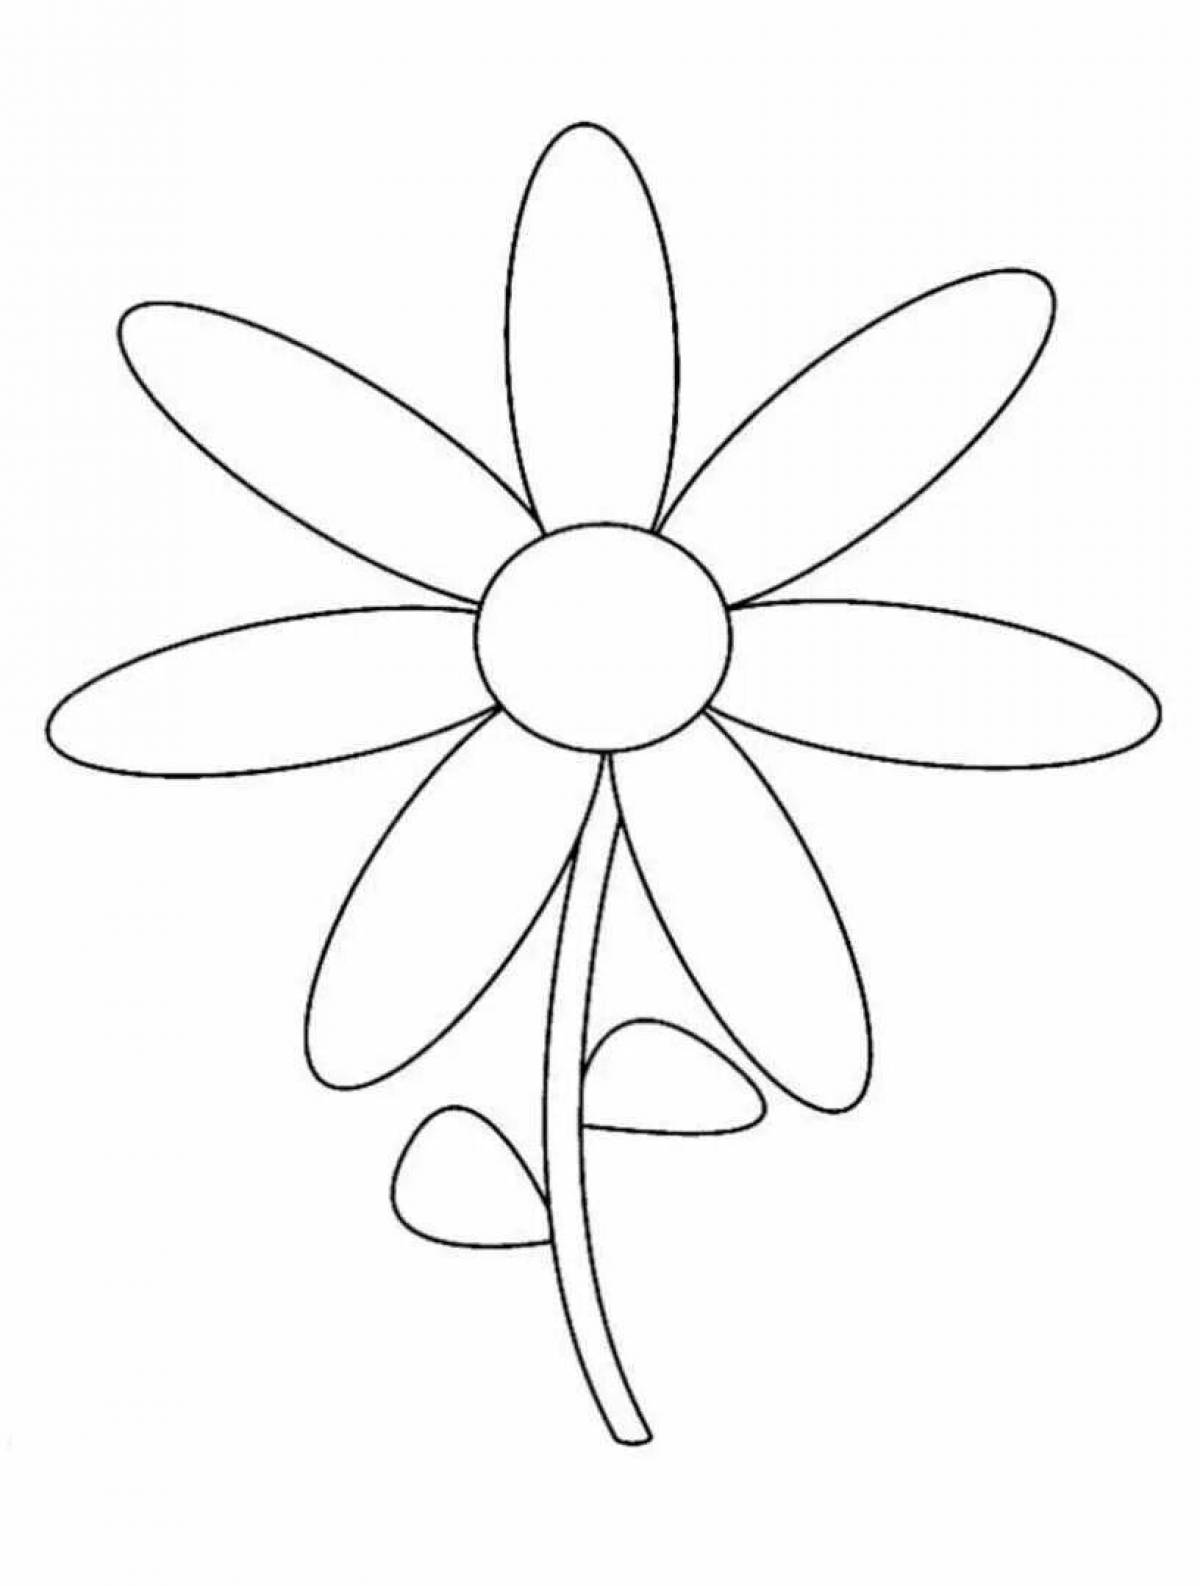 Светящаяся раскраска цветок семицветик для детей 3-4 лет